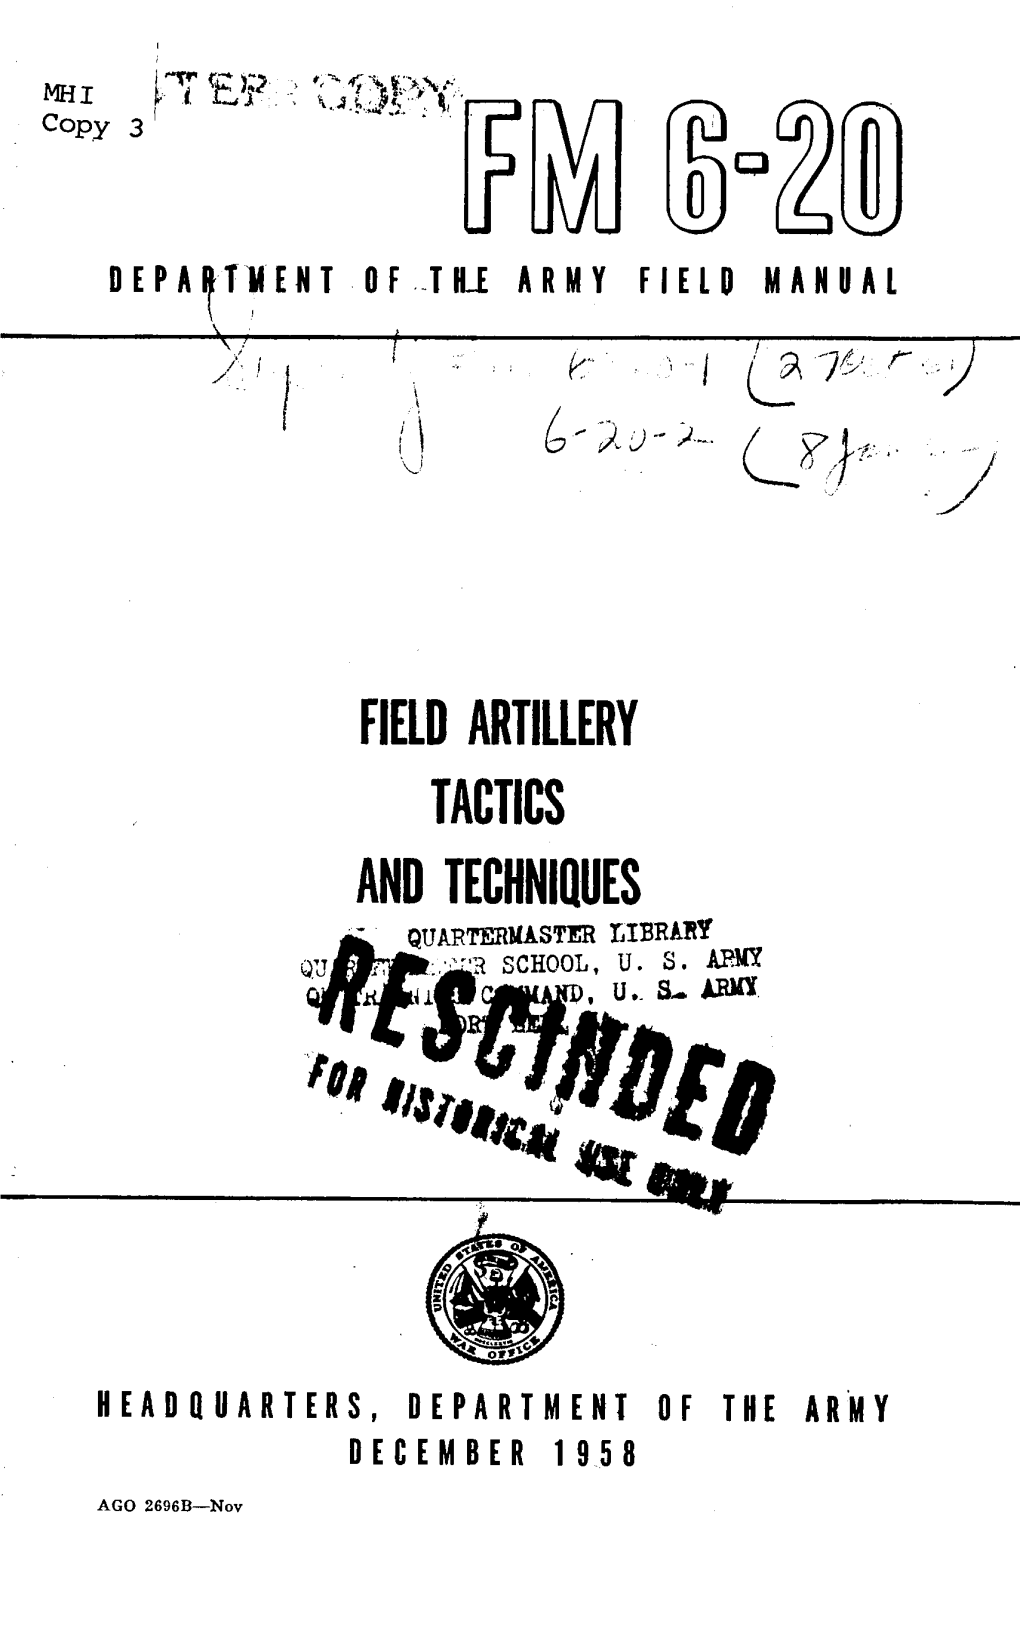 Field Artillery Tactics and Techniques - Quartermaster Library 'Jt ' School,Cso U S